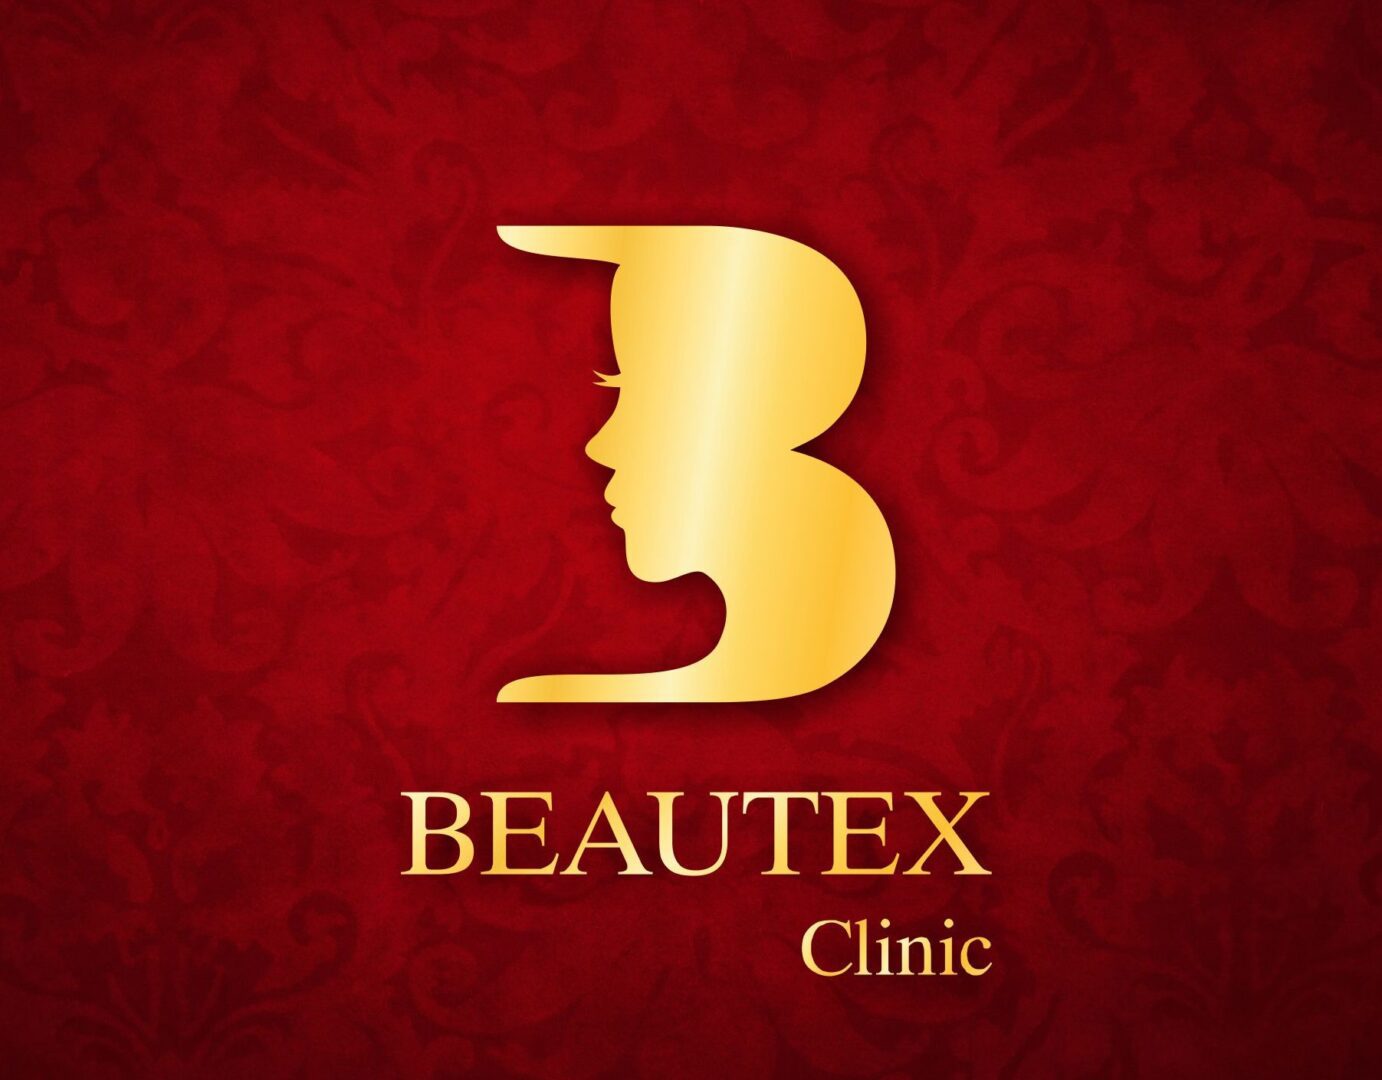 Beautex Clinic logo